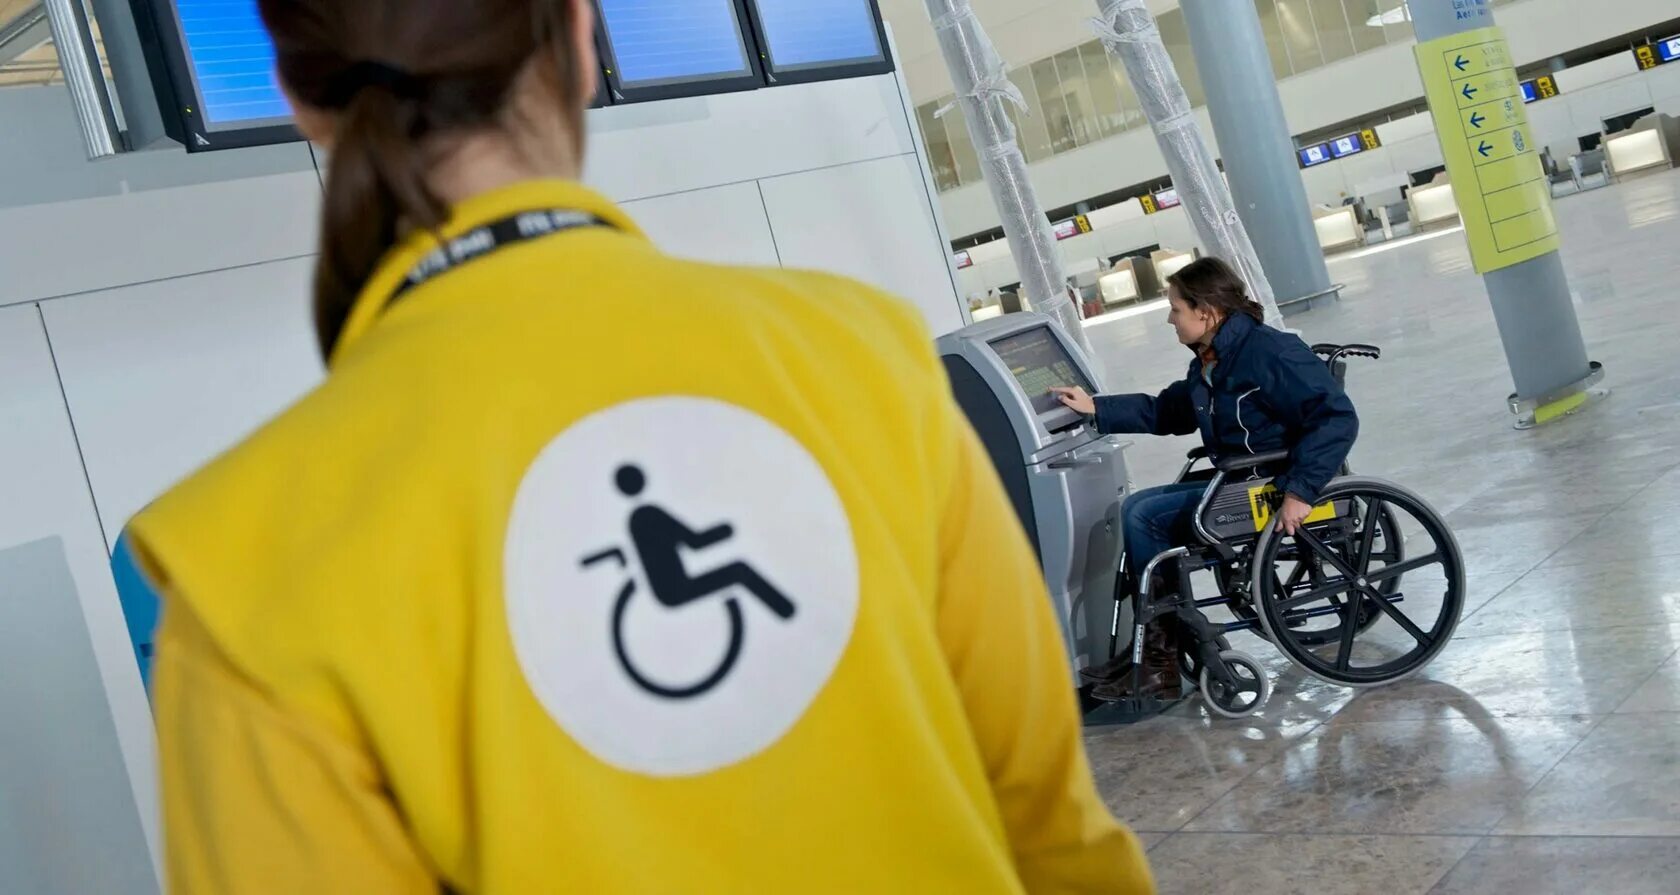 Выезд инвалида. Транспорт для инвалидов. Доступность для инвалидов. Маломобильные в аэропорту. Транспорт для инвалидов колясочников.